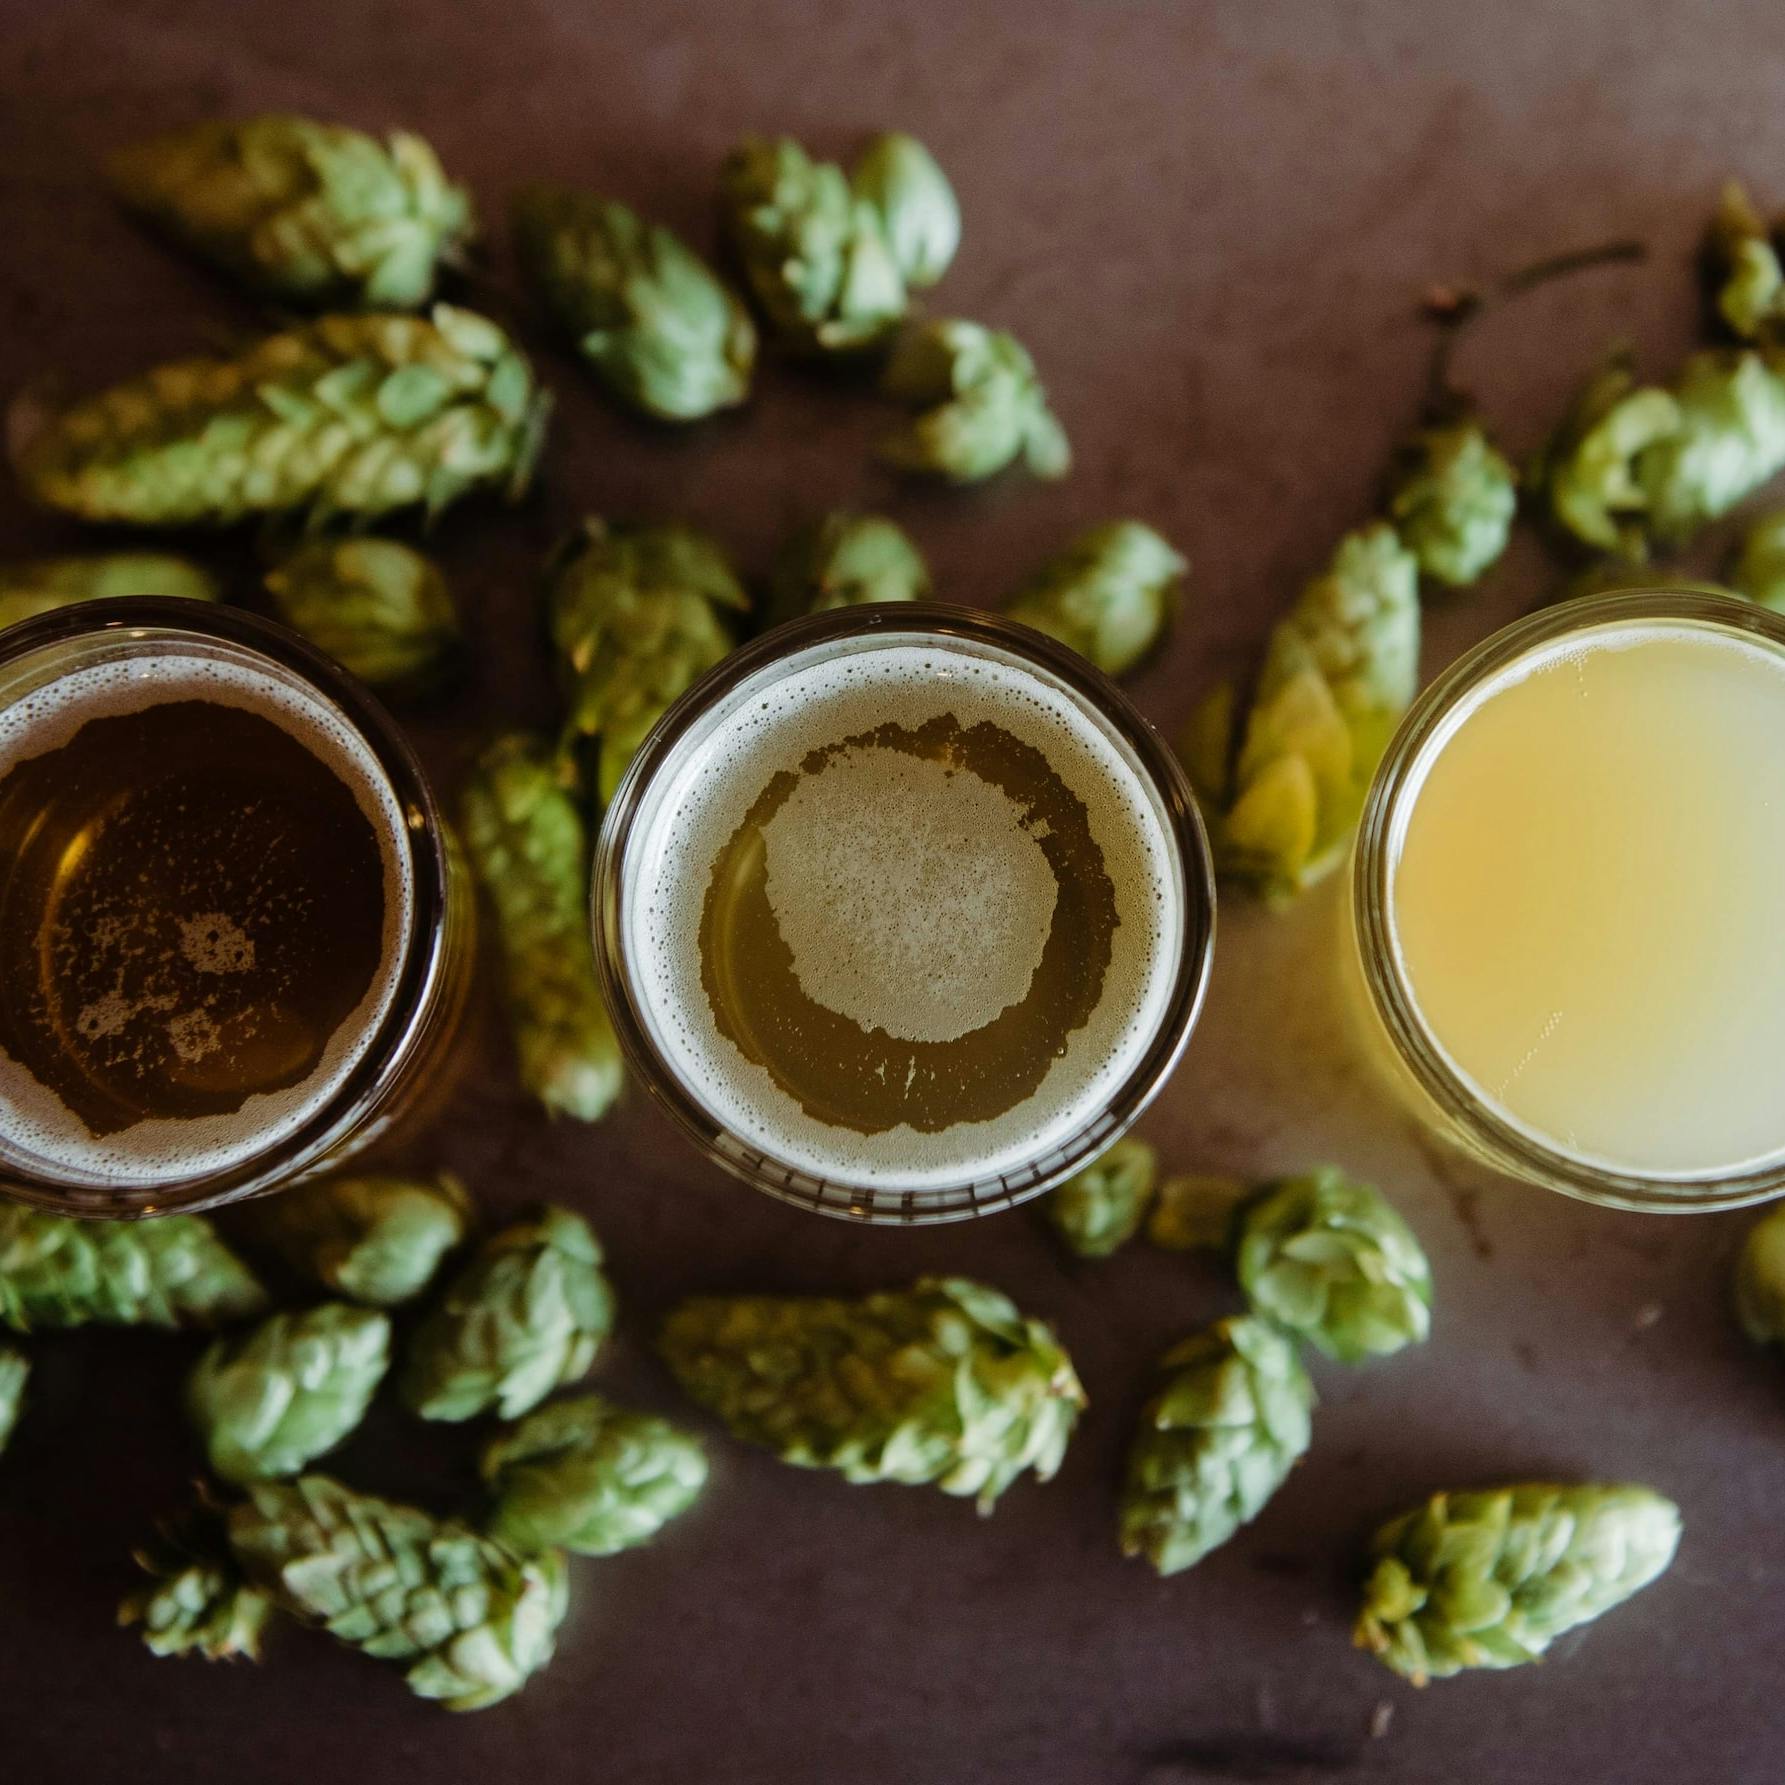 Immagine con 3 bicchieri di birra visti dall'alto e tutto intorno ad essi molti luppoli verdi